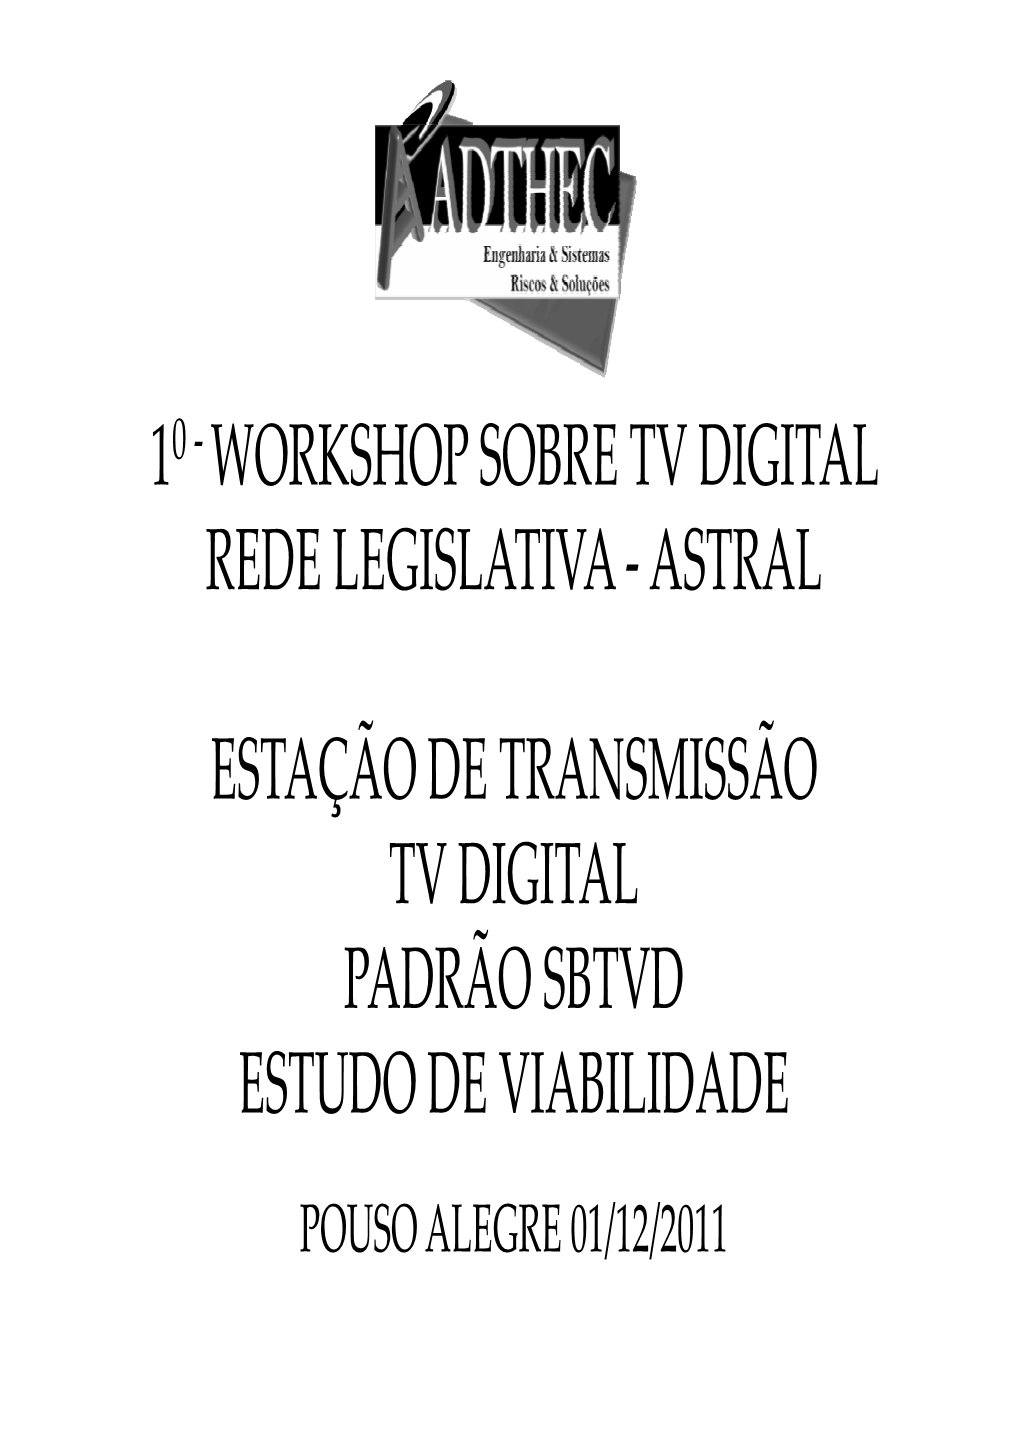 Workshop Sobre Tv Digital Rede Legislativa ‐ Astral